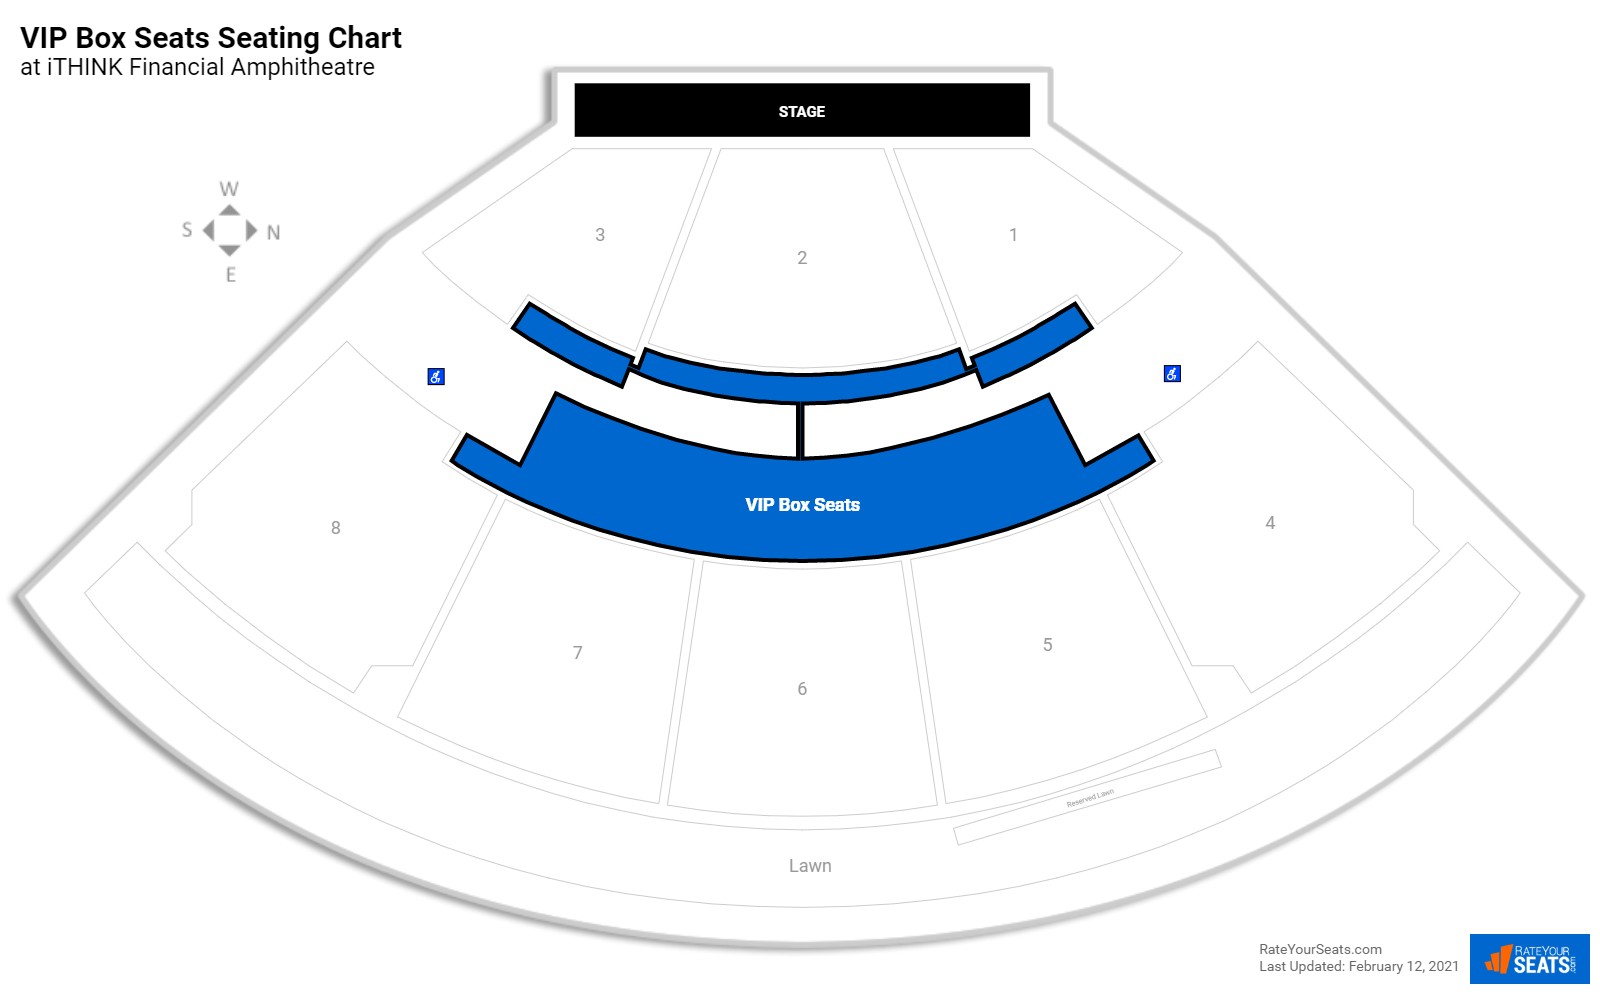 Cruzan Amphitheater West Palm Beach Seating Chart